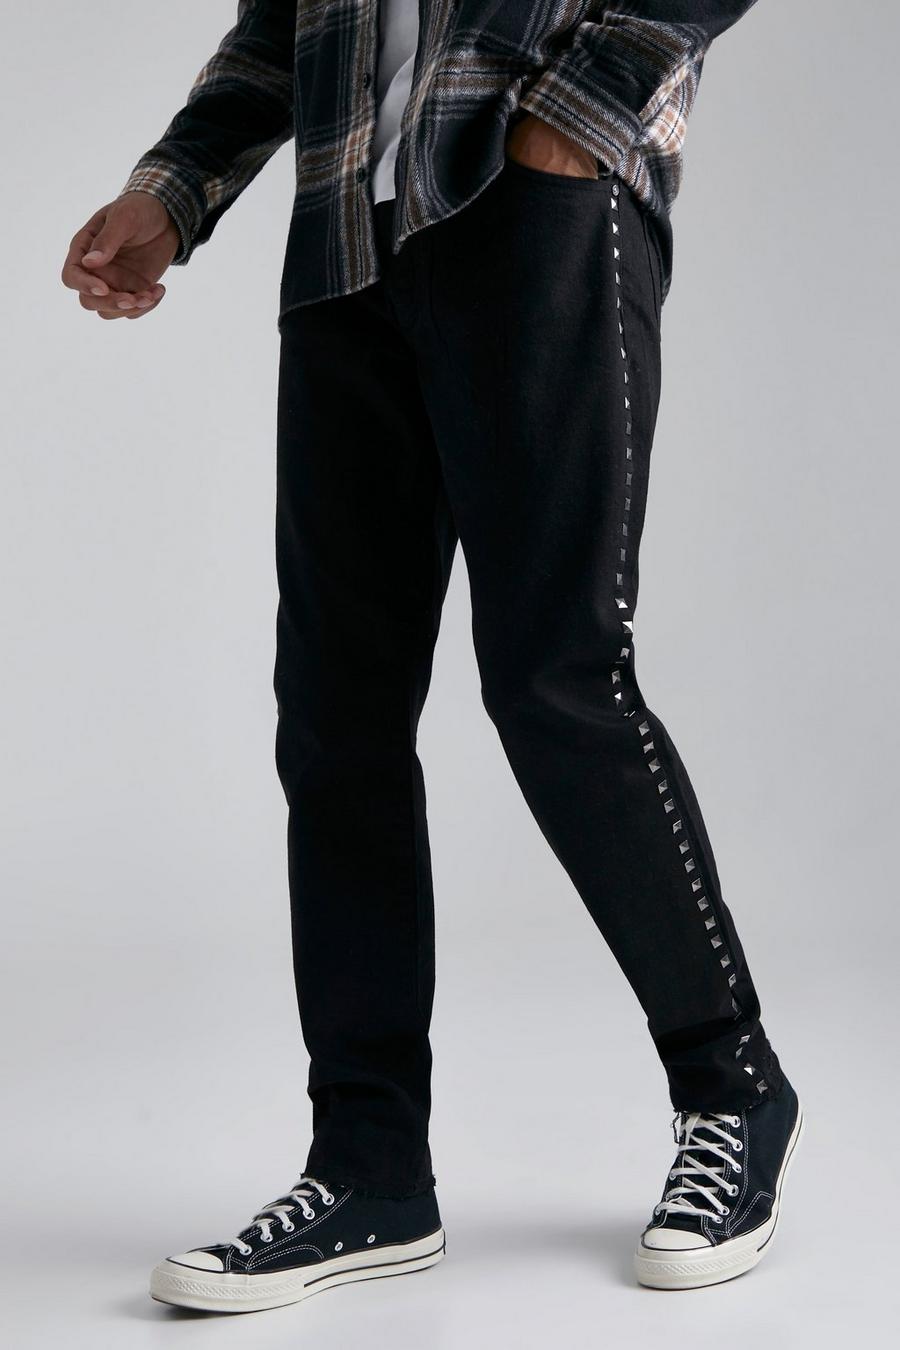 Jeans Tall Slim Fit in denim rigido con borchie, True black